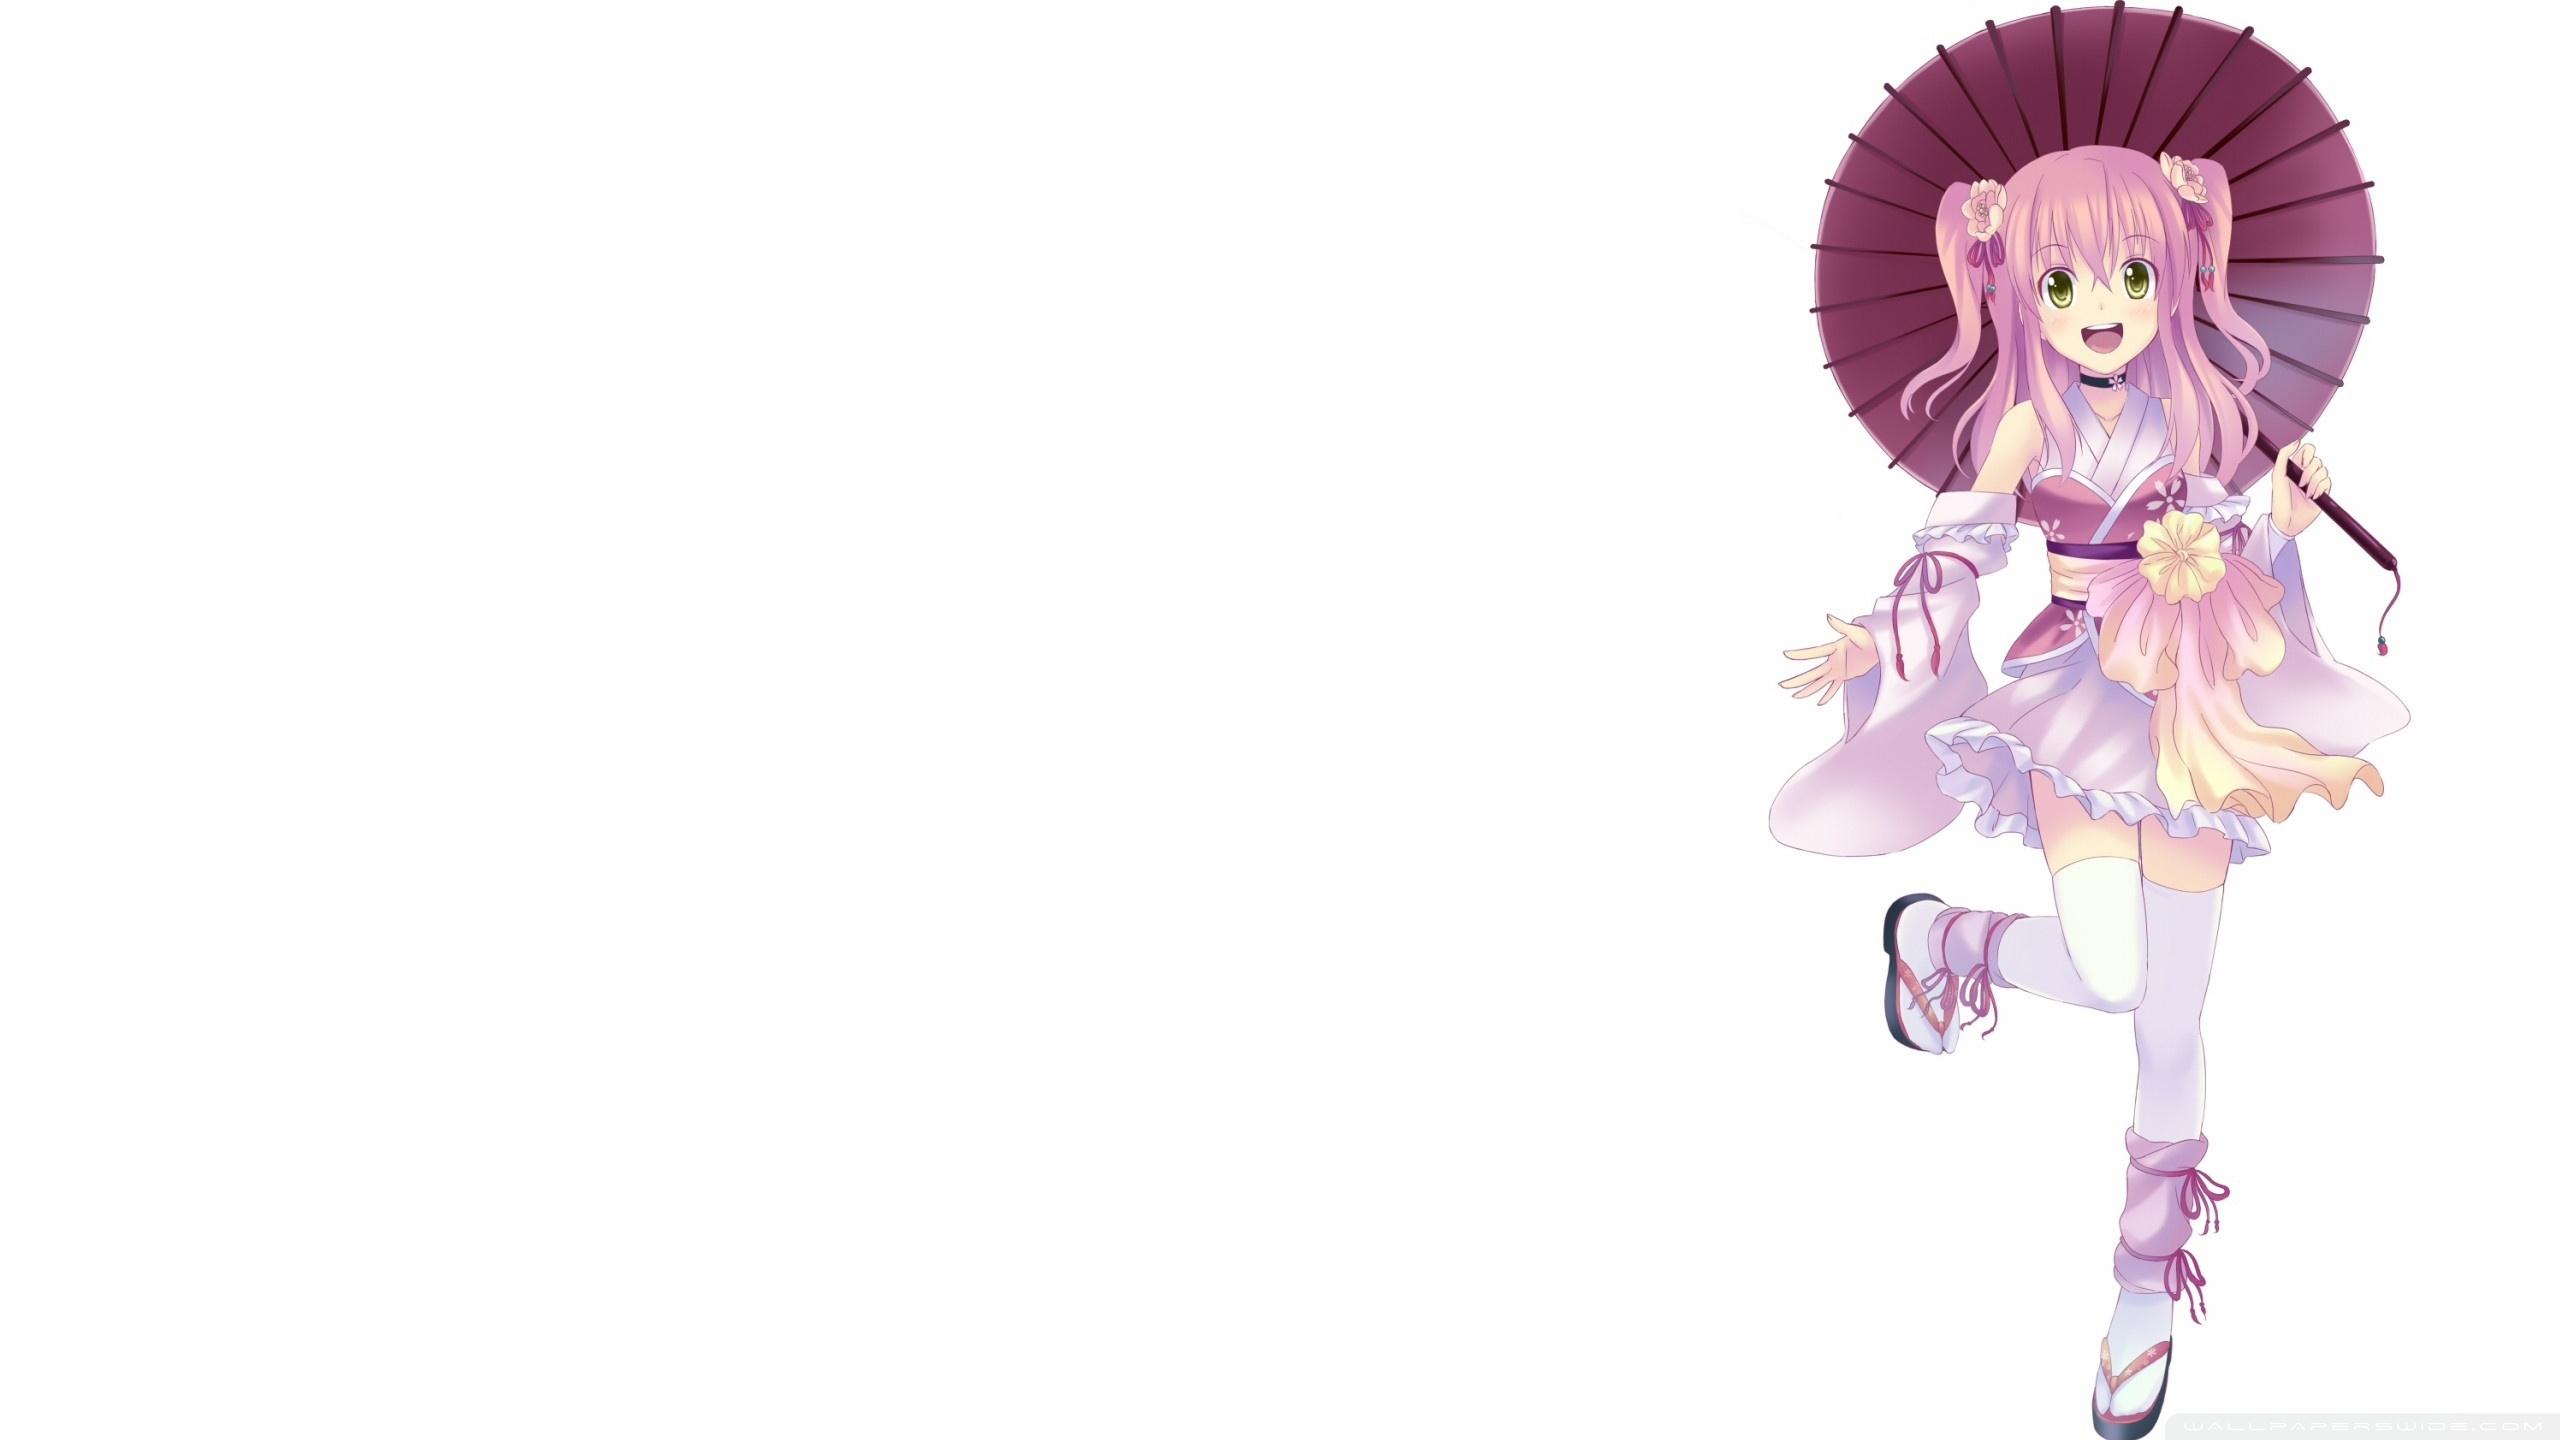 Japanese Anime Girl Ultra HD Desktop Background Wallpaper for 4K UHD TV, Tablet